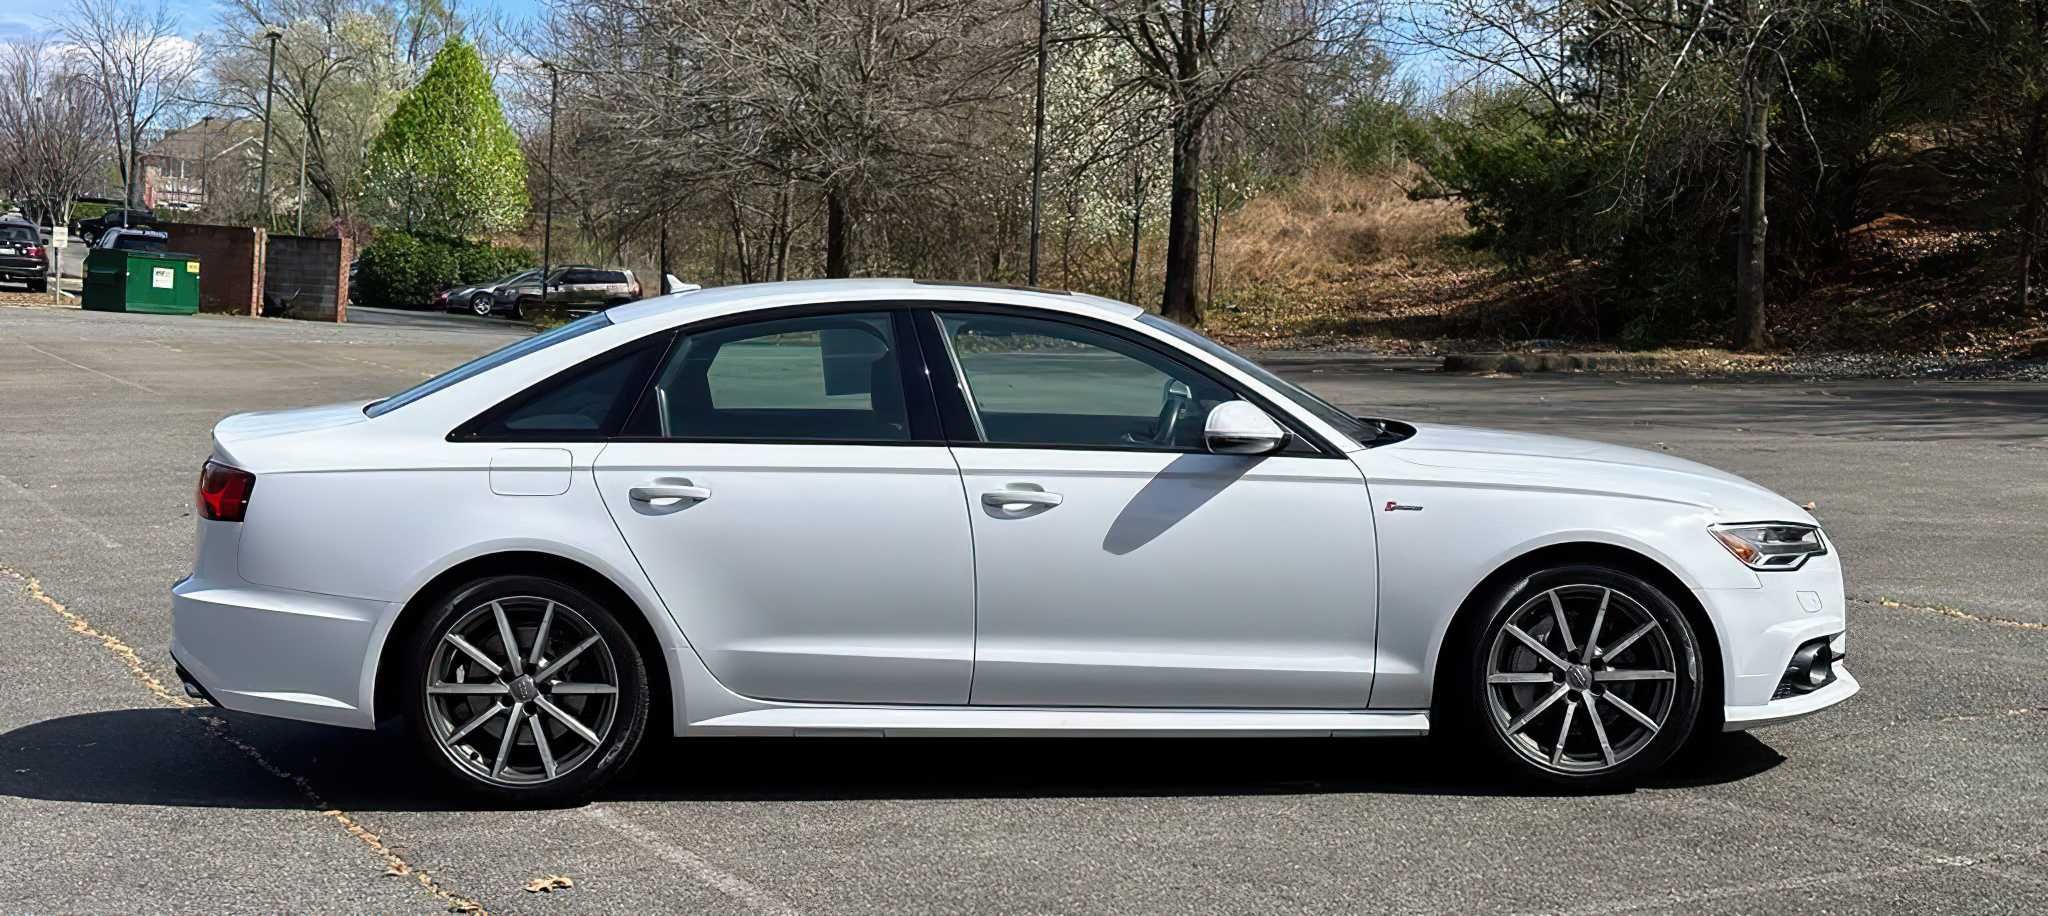 Audi A6 2018 White